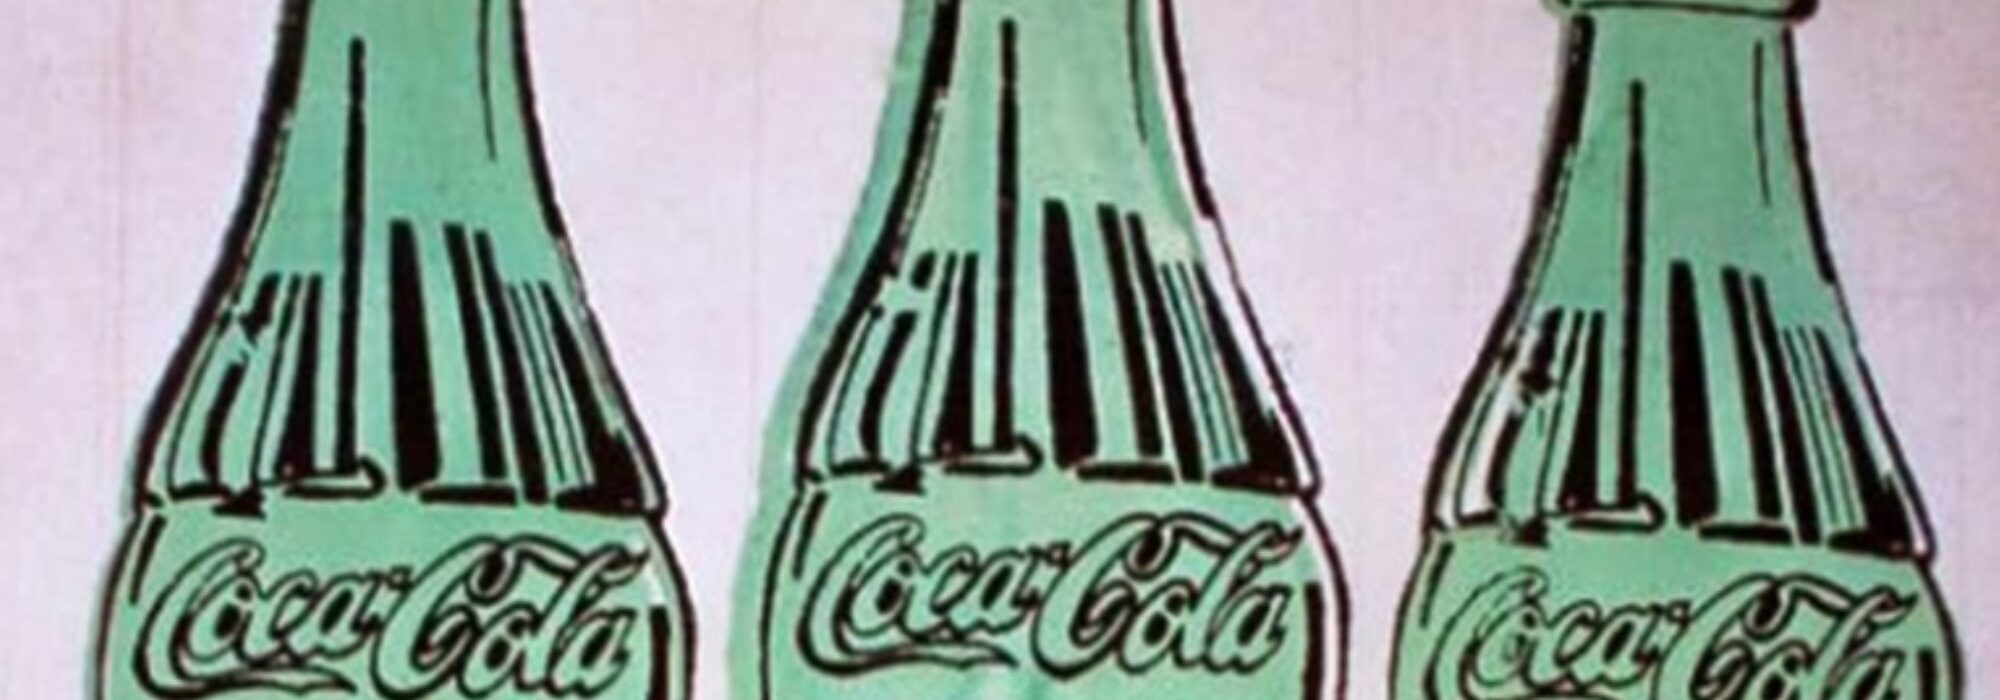 Imagem: 3 Coke Bottles (Andy Warhol, 1962, detalhe)